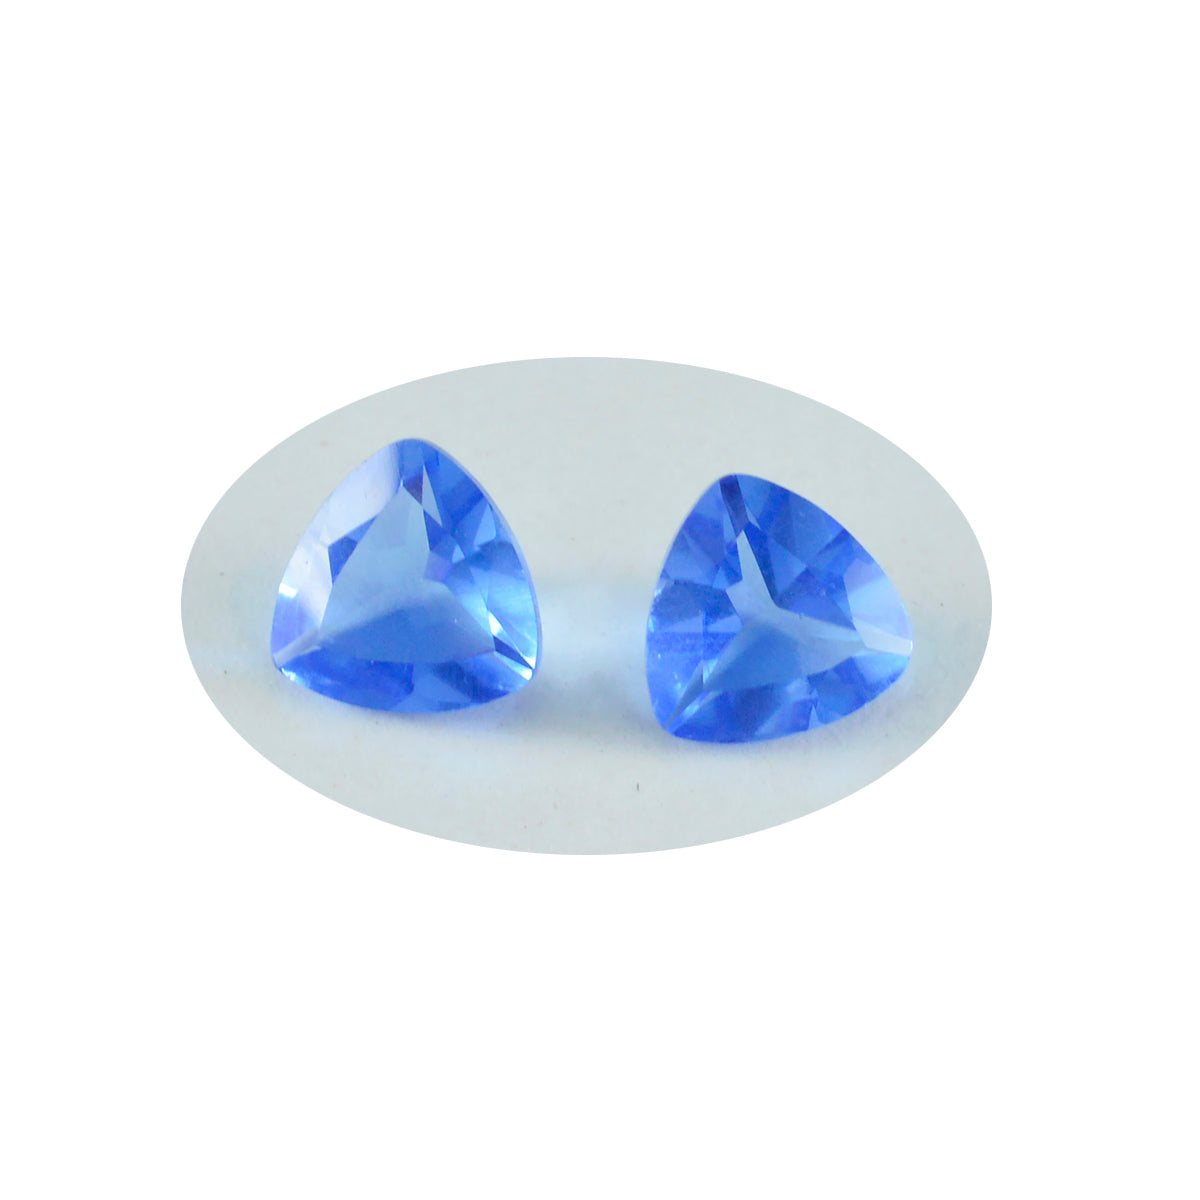 Riyogems 1pc saphir bleu cz facettes 13x13mm forme trillion qualité incroyable pierre précieuse en vrac